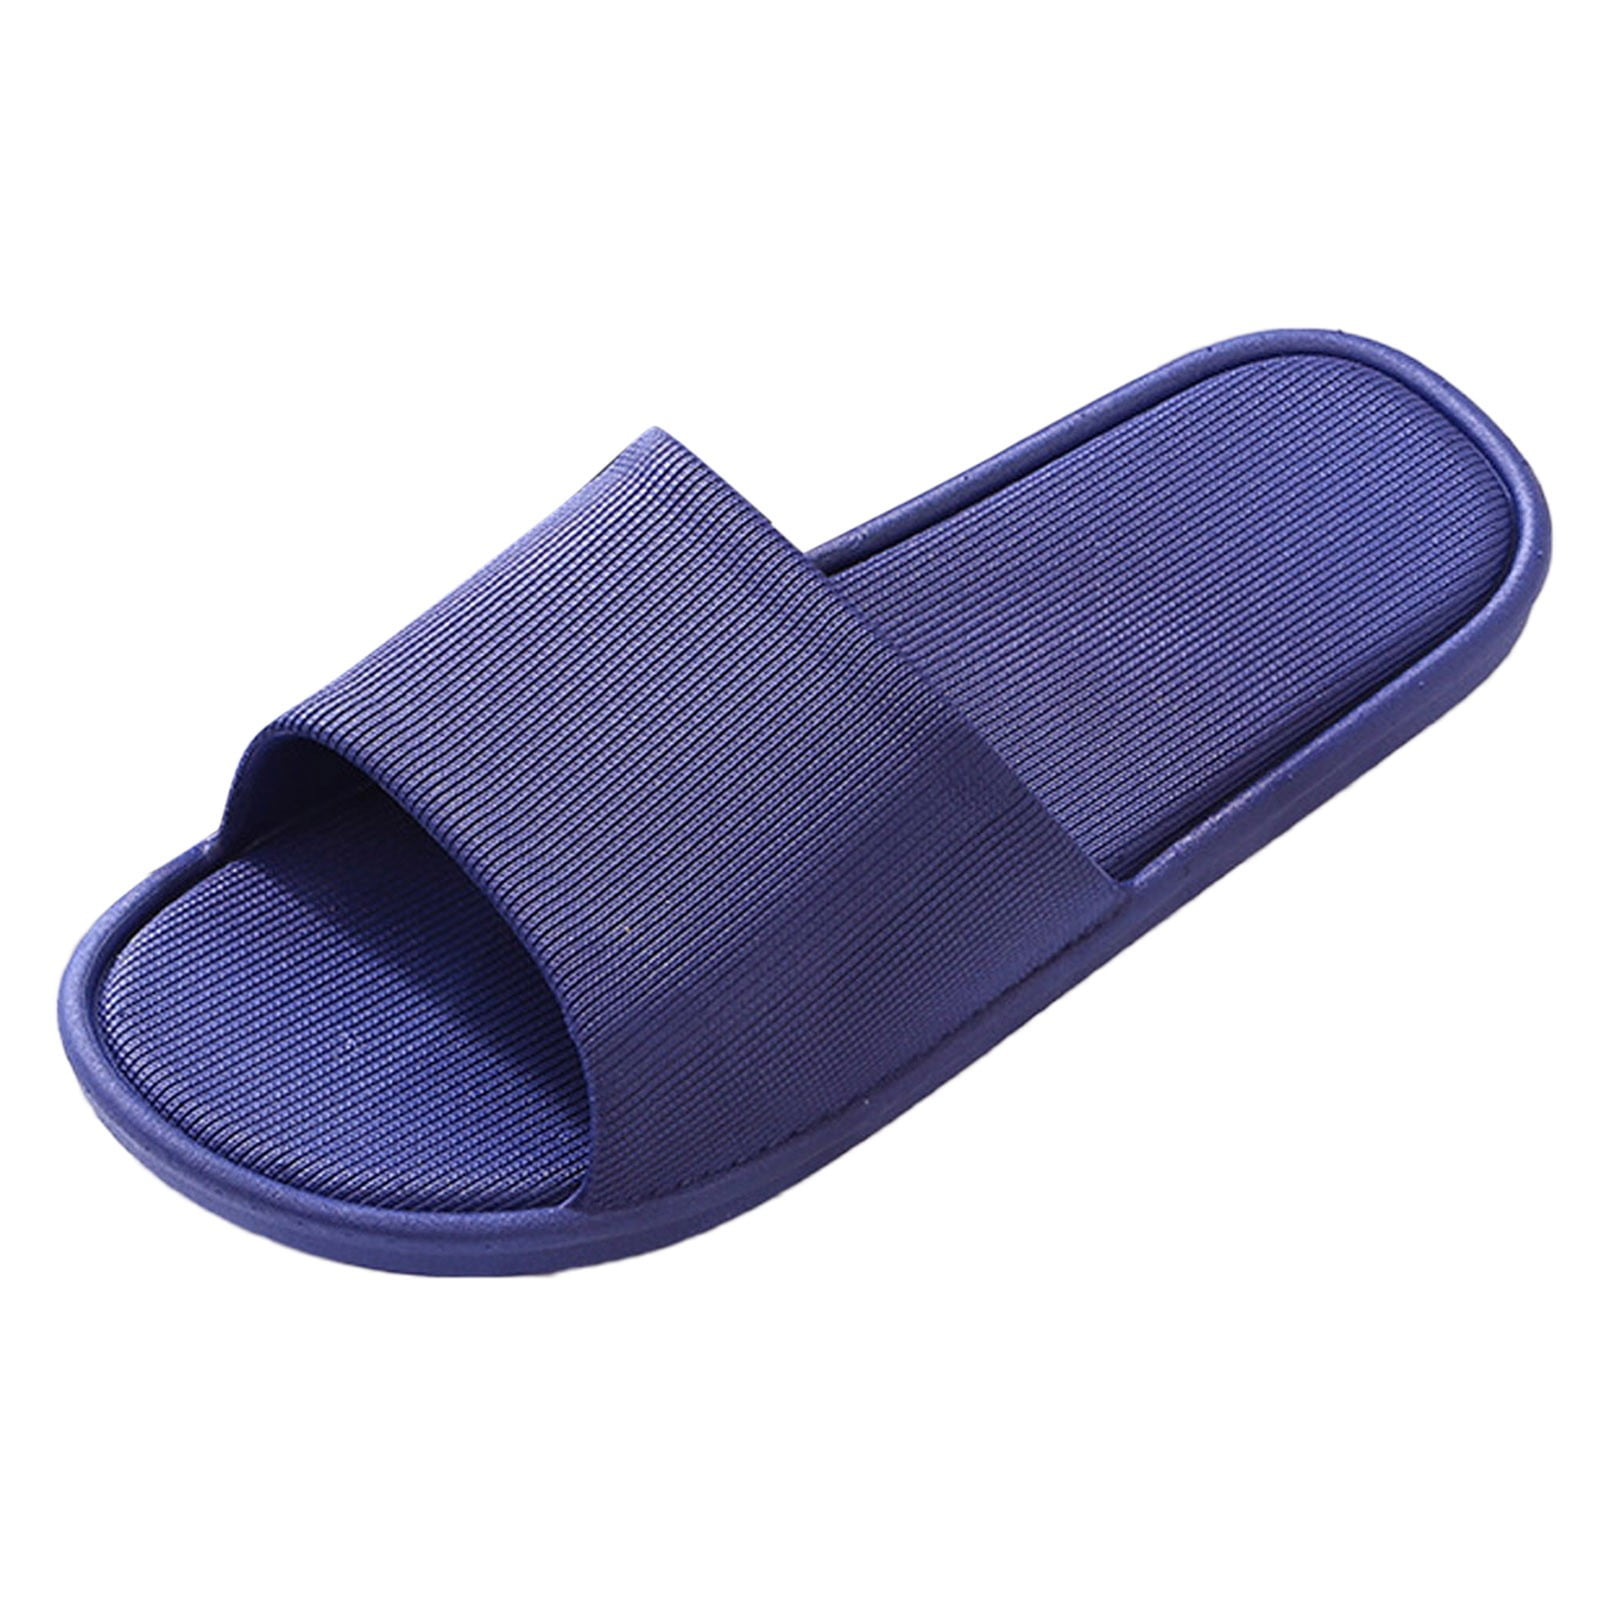 Calf hair slippers in blue - Dries Van Noten | Mytheresa